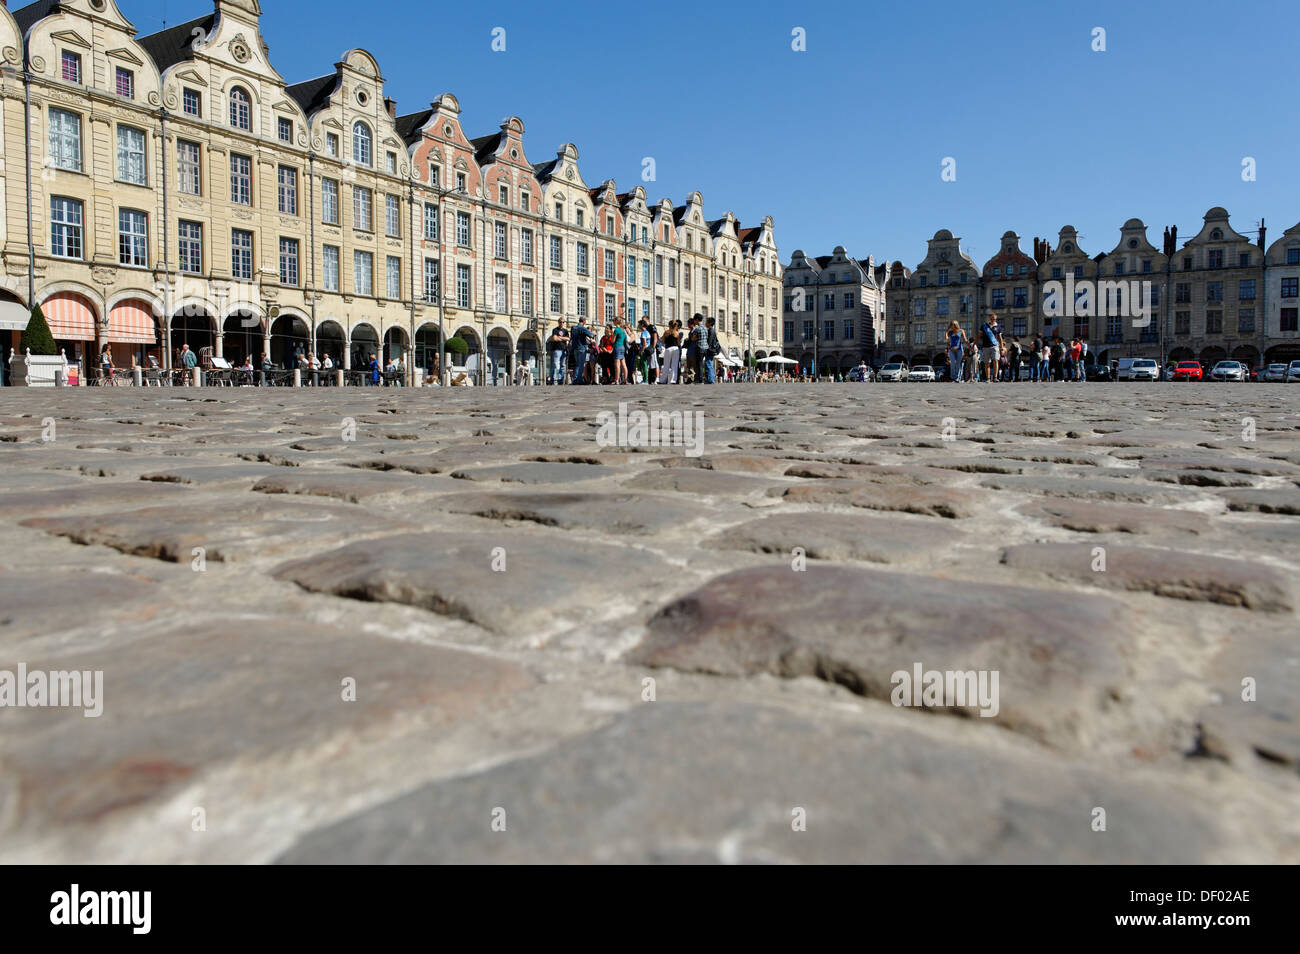 Pavés, maisons à pignons sur la place Place des Héros, Arras, Pas-de-Calais, France, Europe Banque D'Images